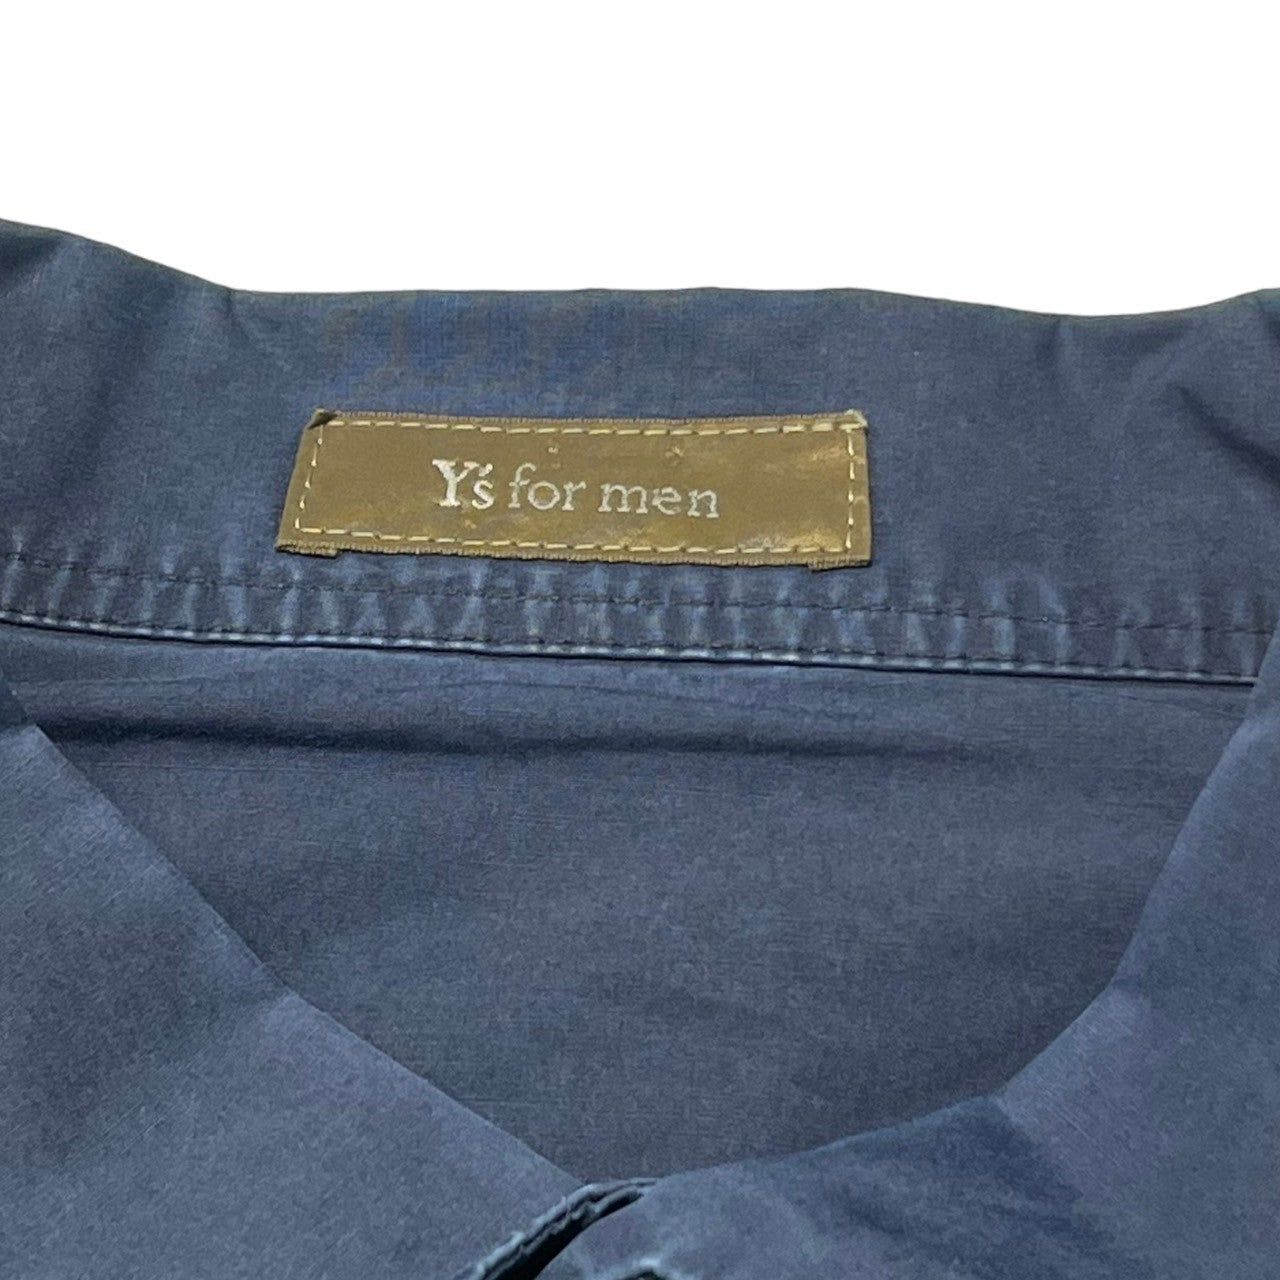 Y's for men(ワイズフォーメン) 90's  oversized cotton shirt オーバーサイズ コットン シャツ MK-E09-001 表記無し(FREE) ネイビー 推定90年代初頭 ヴィンテージ アーカイブ 長袖